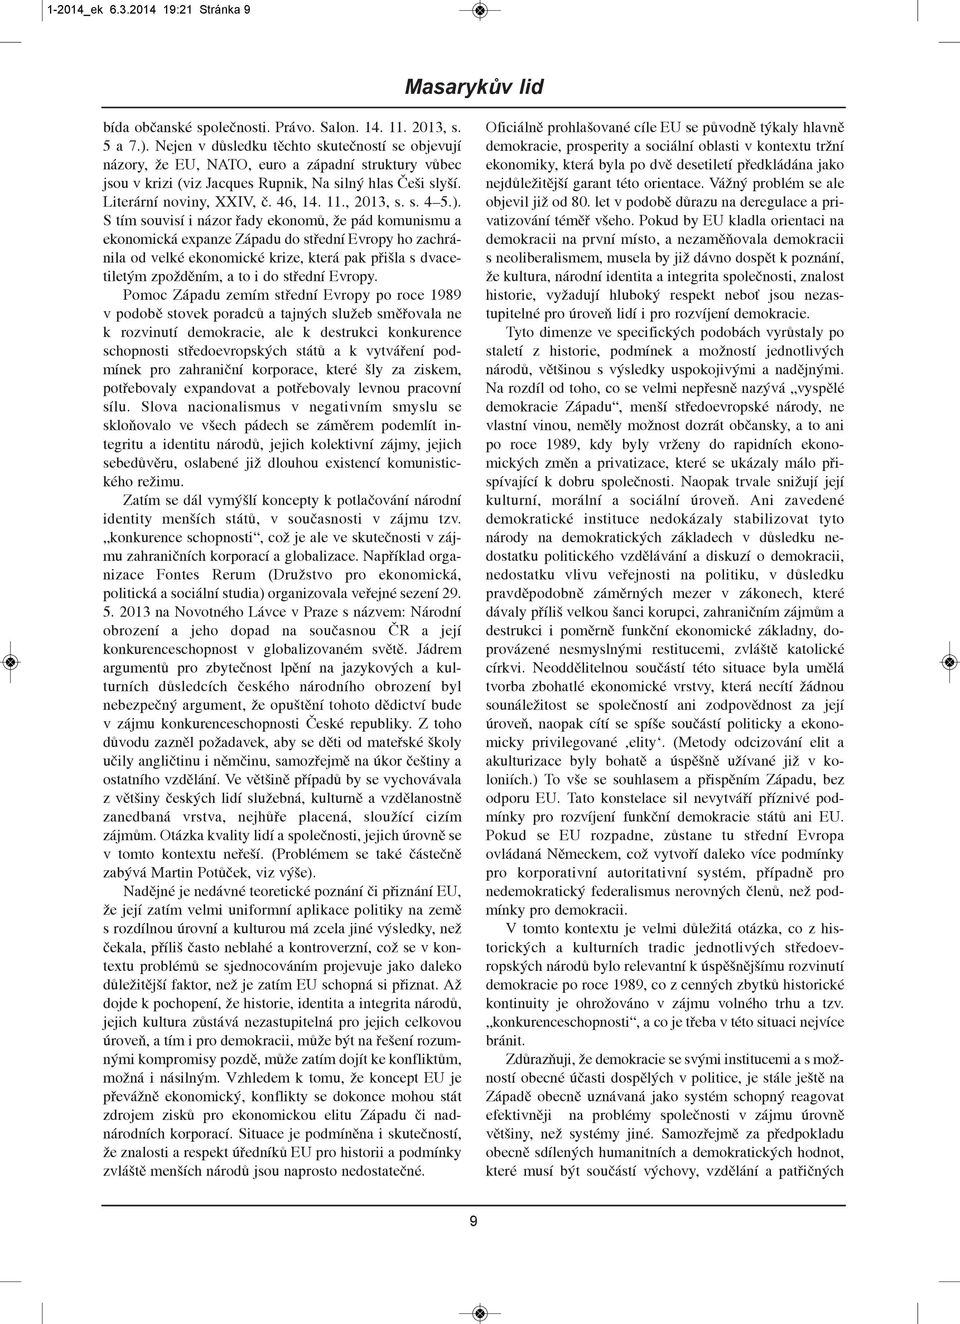 , 2013, s. s. 4 5.).